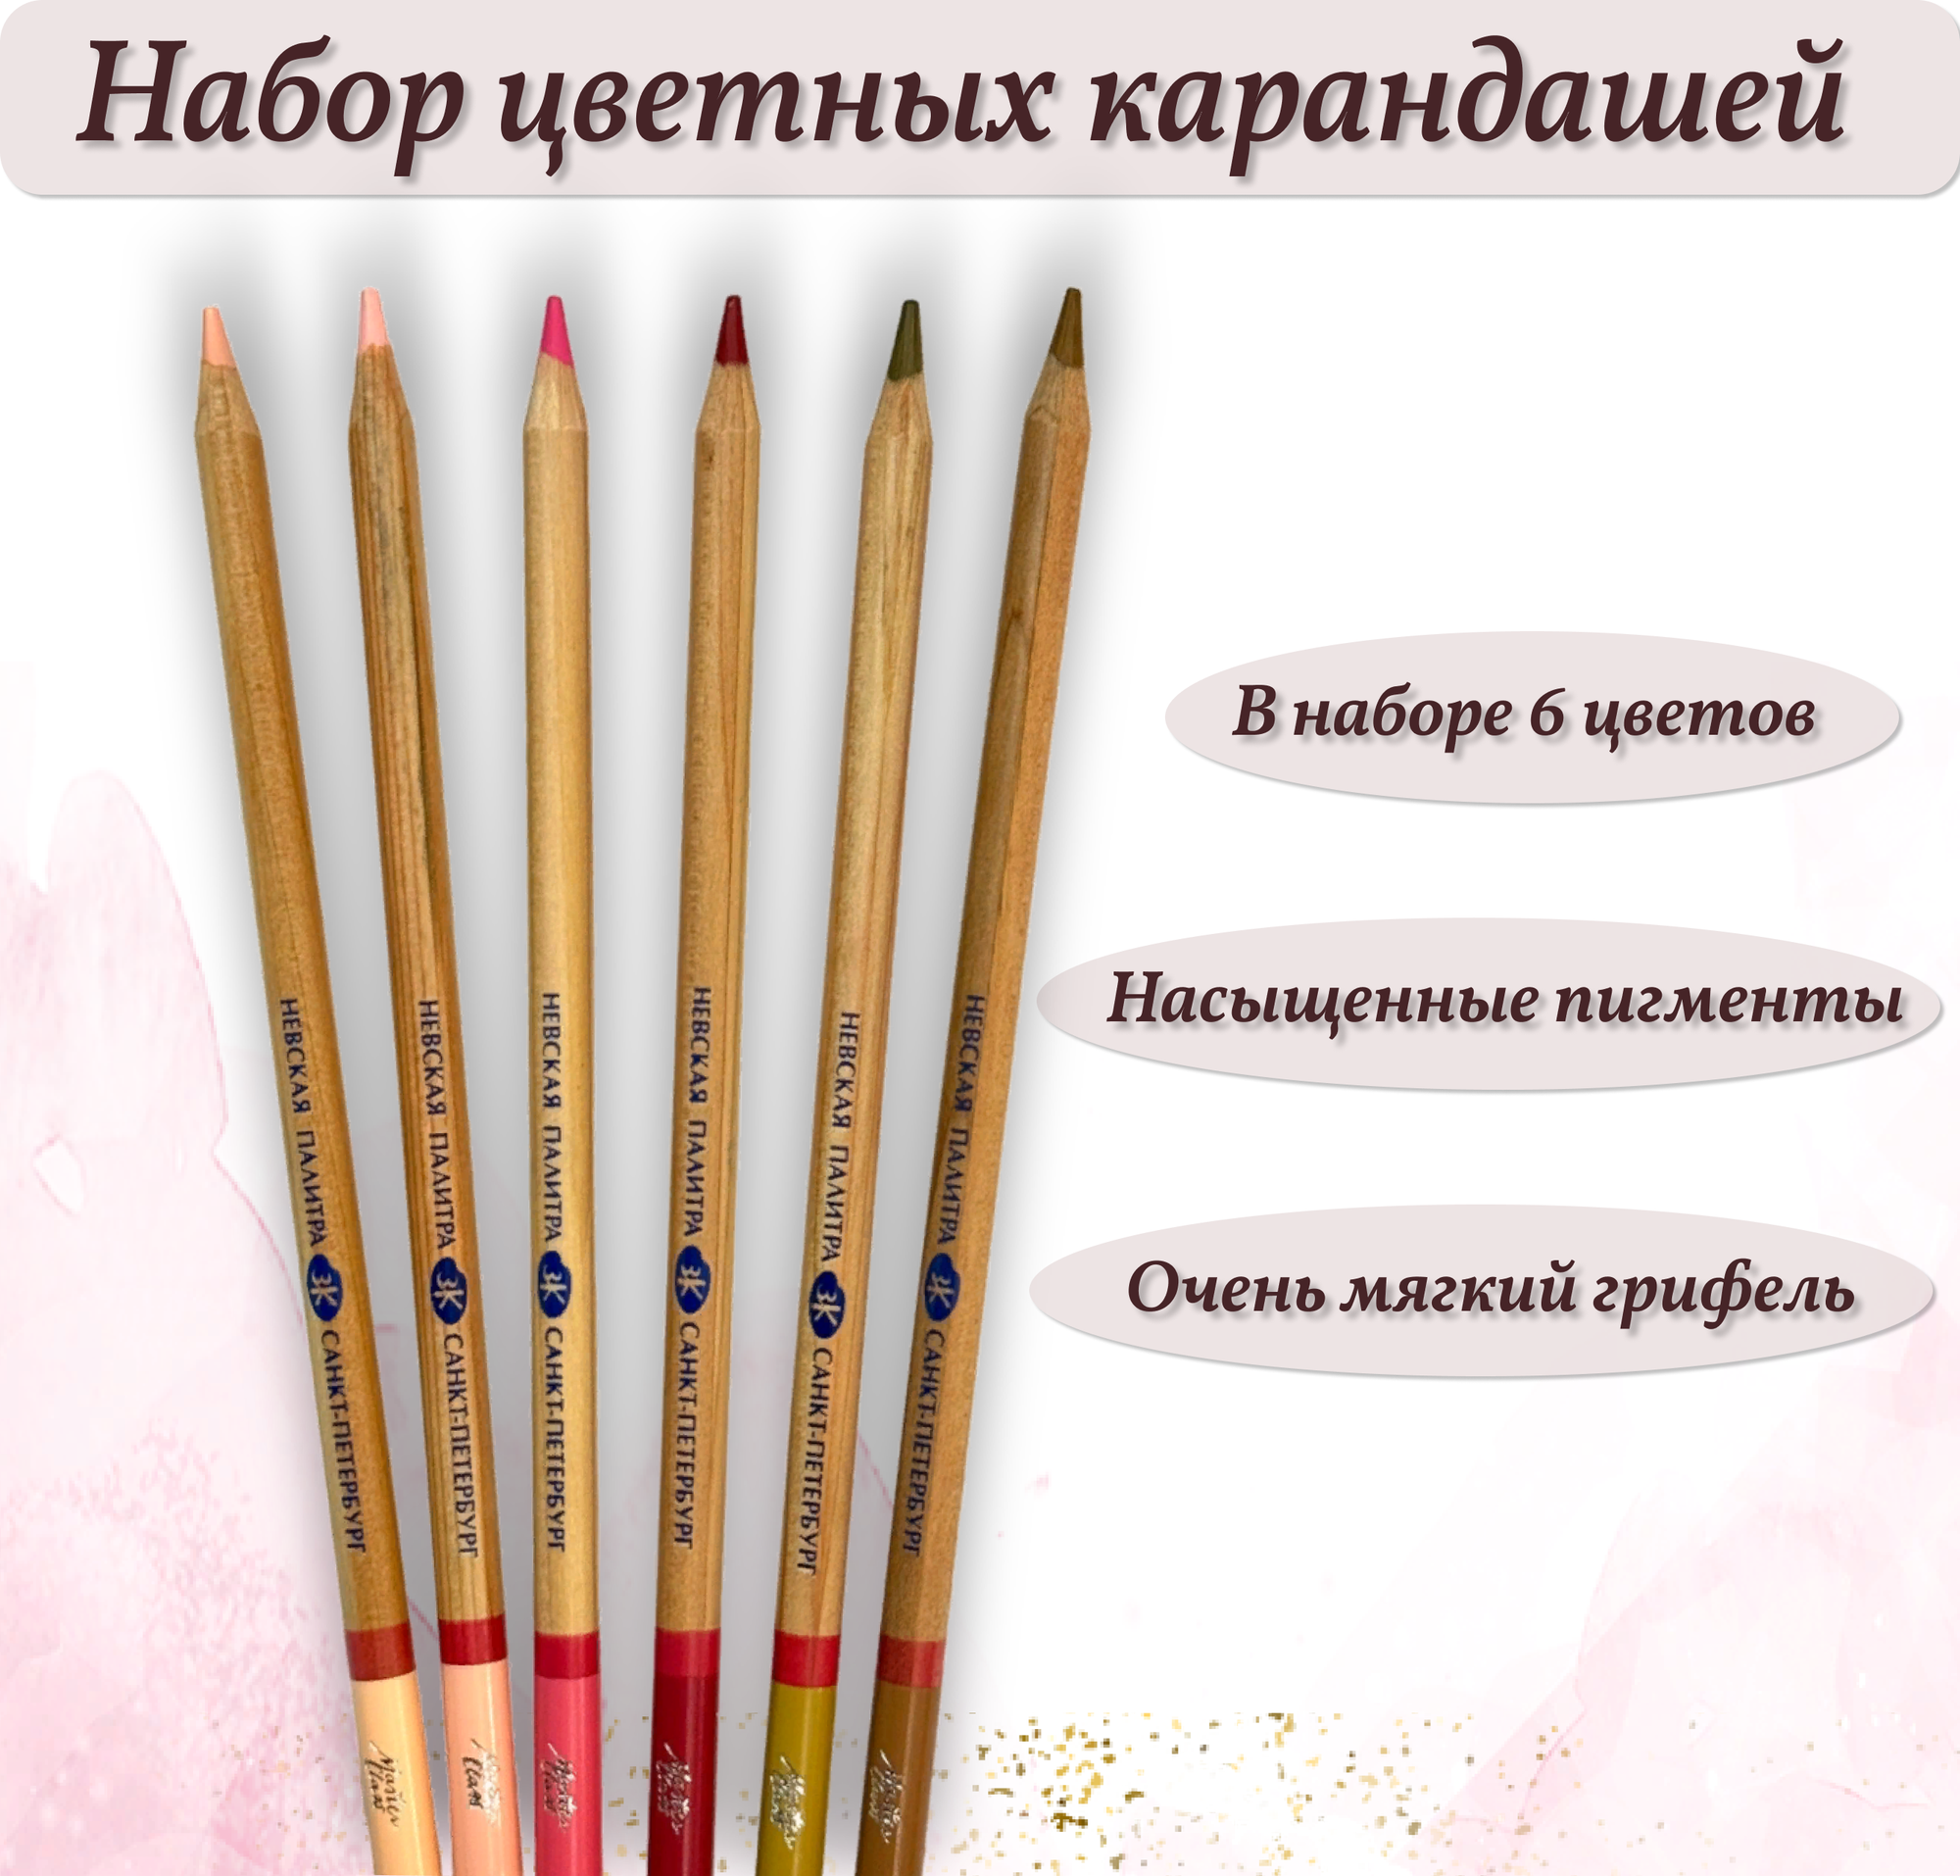 Невская Палитра Набор цветных карандашей "Мастер класс", 6 цветов, портрет